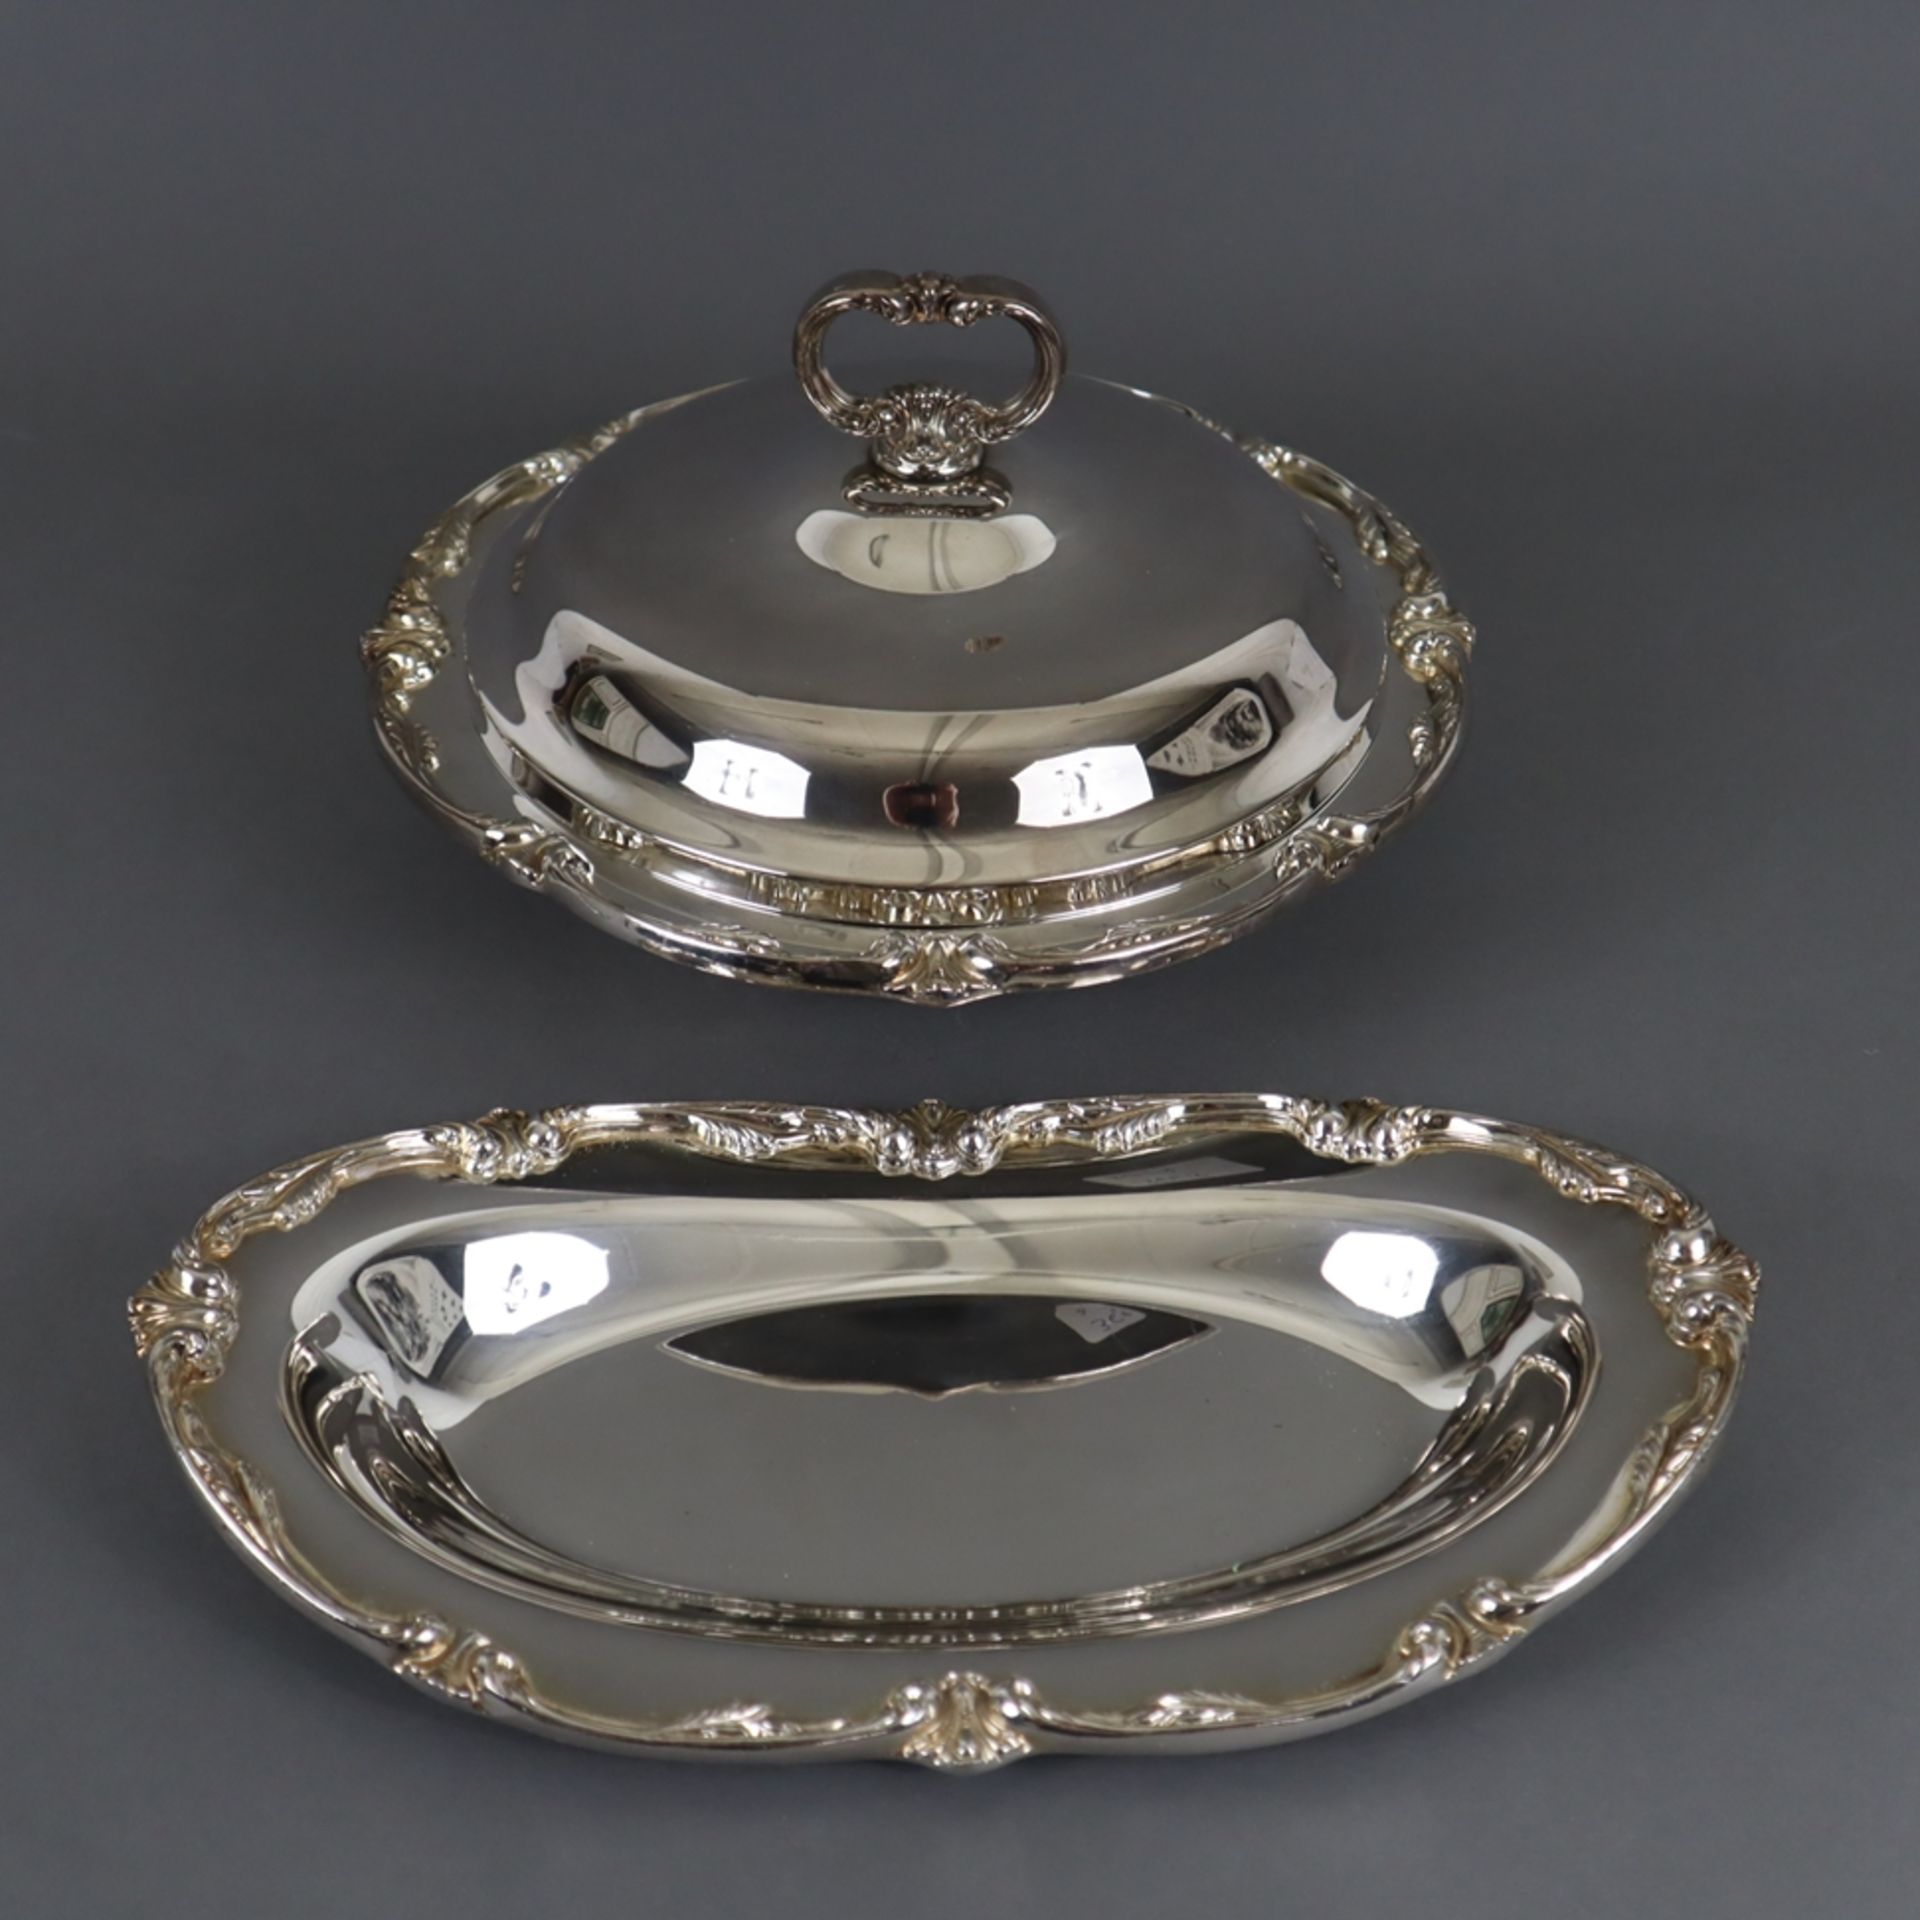 Servierplatte und Servierschale mit Glaseinsatz - 2.Hälfte 20.Jh., versilbert, 1x ovale Platte mit 